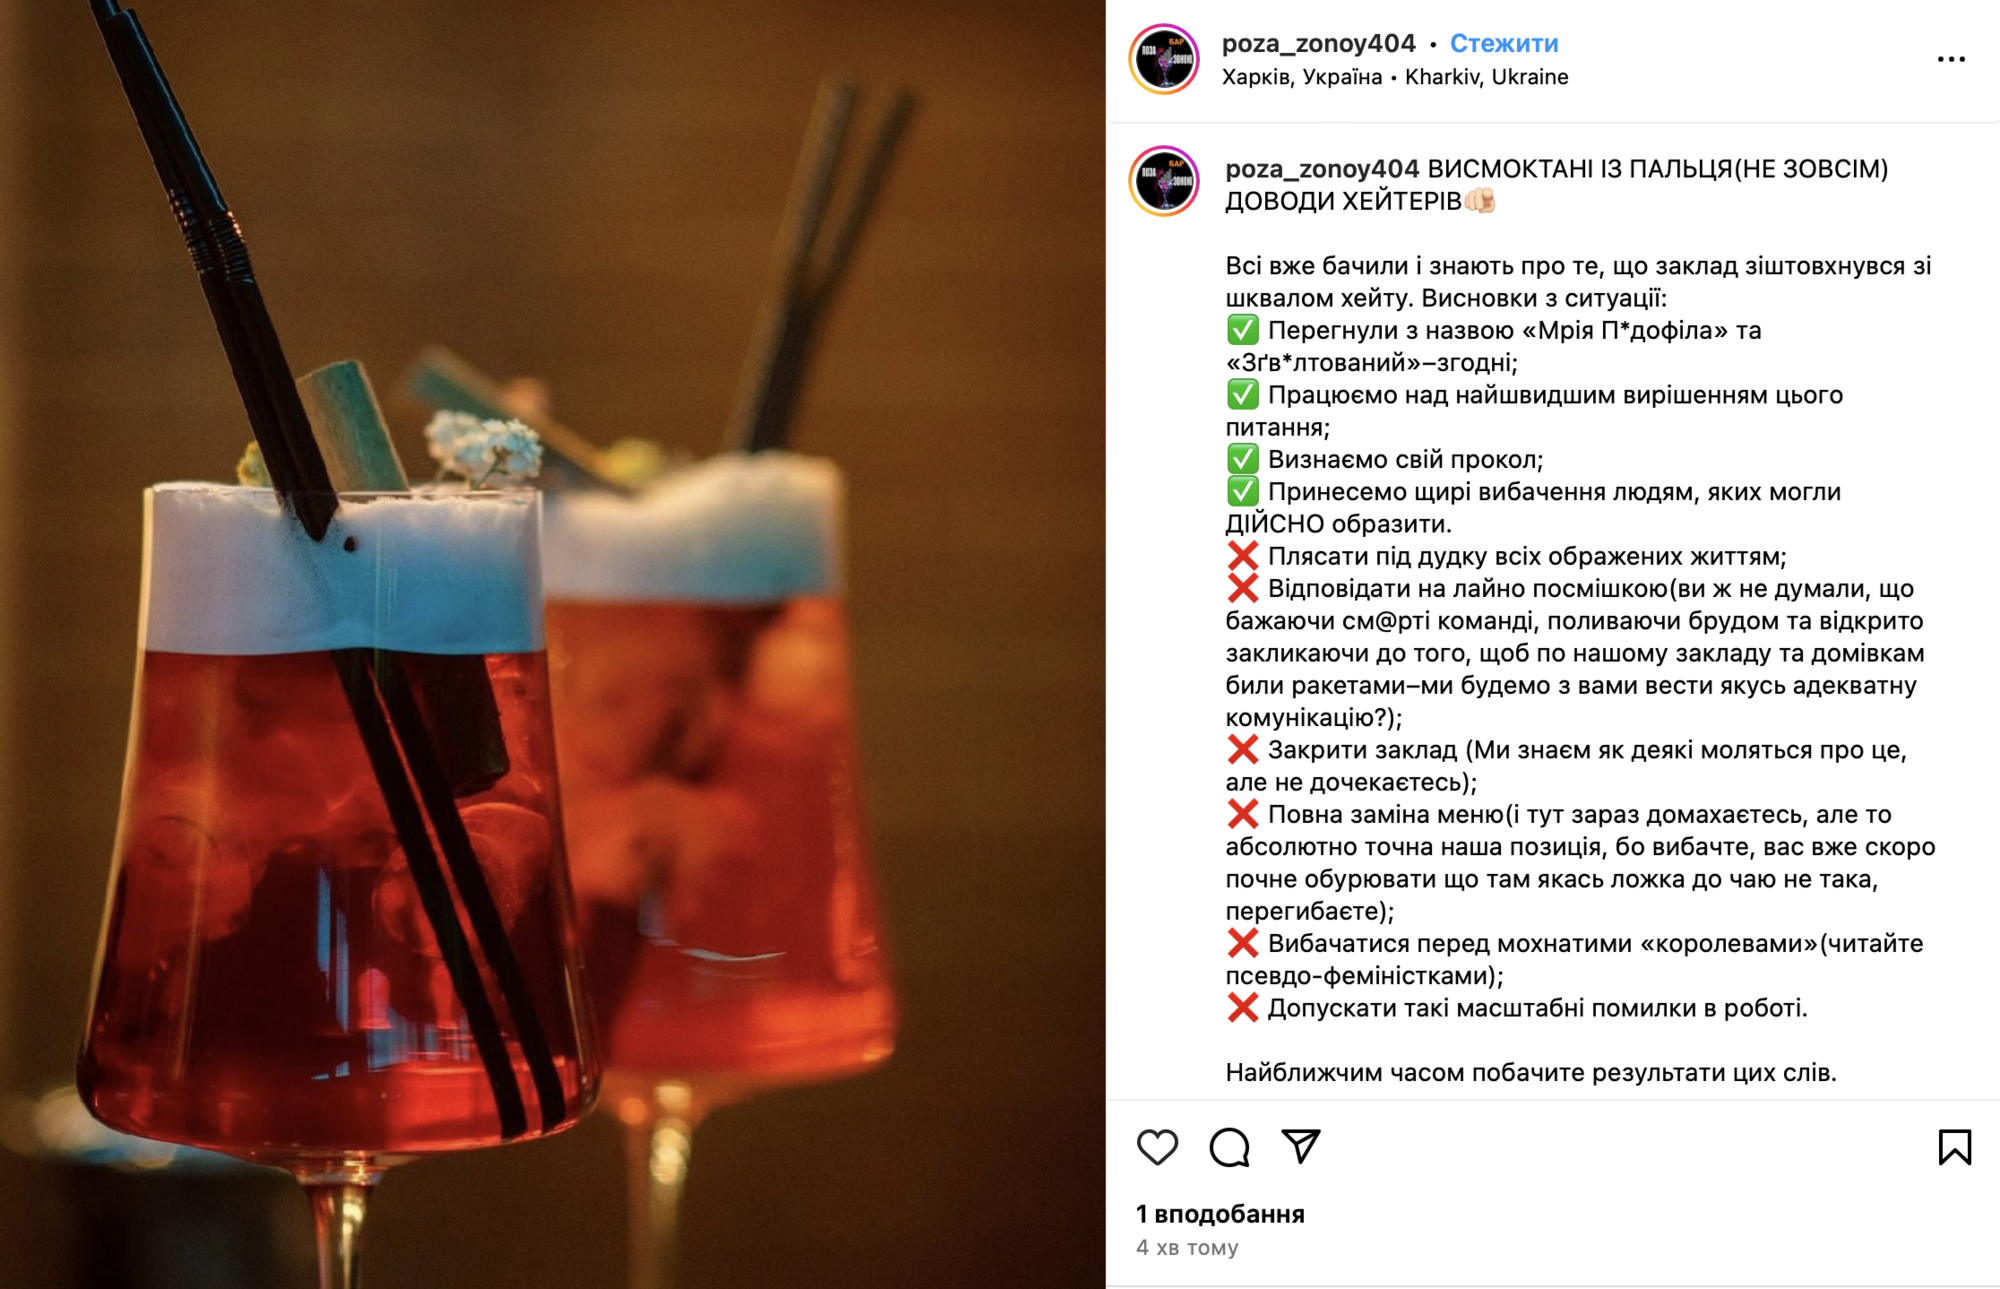 Бар в Харькове, оскандалившийся коктейлями "Мечта педофила" и "Дешевая хвойда", закрыли. Но есть нюанс